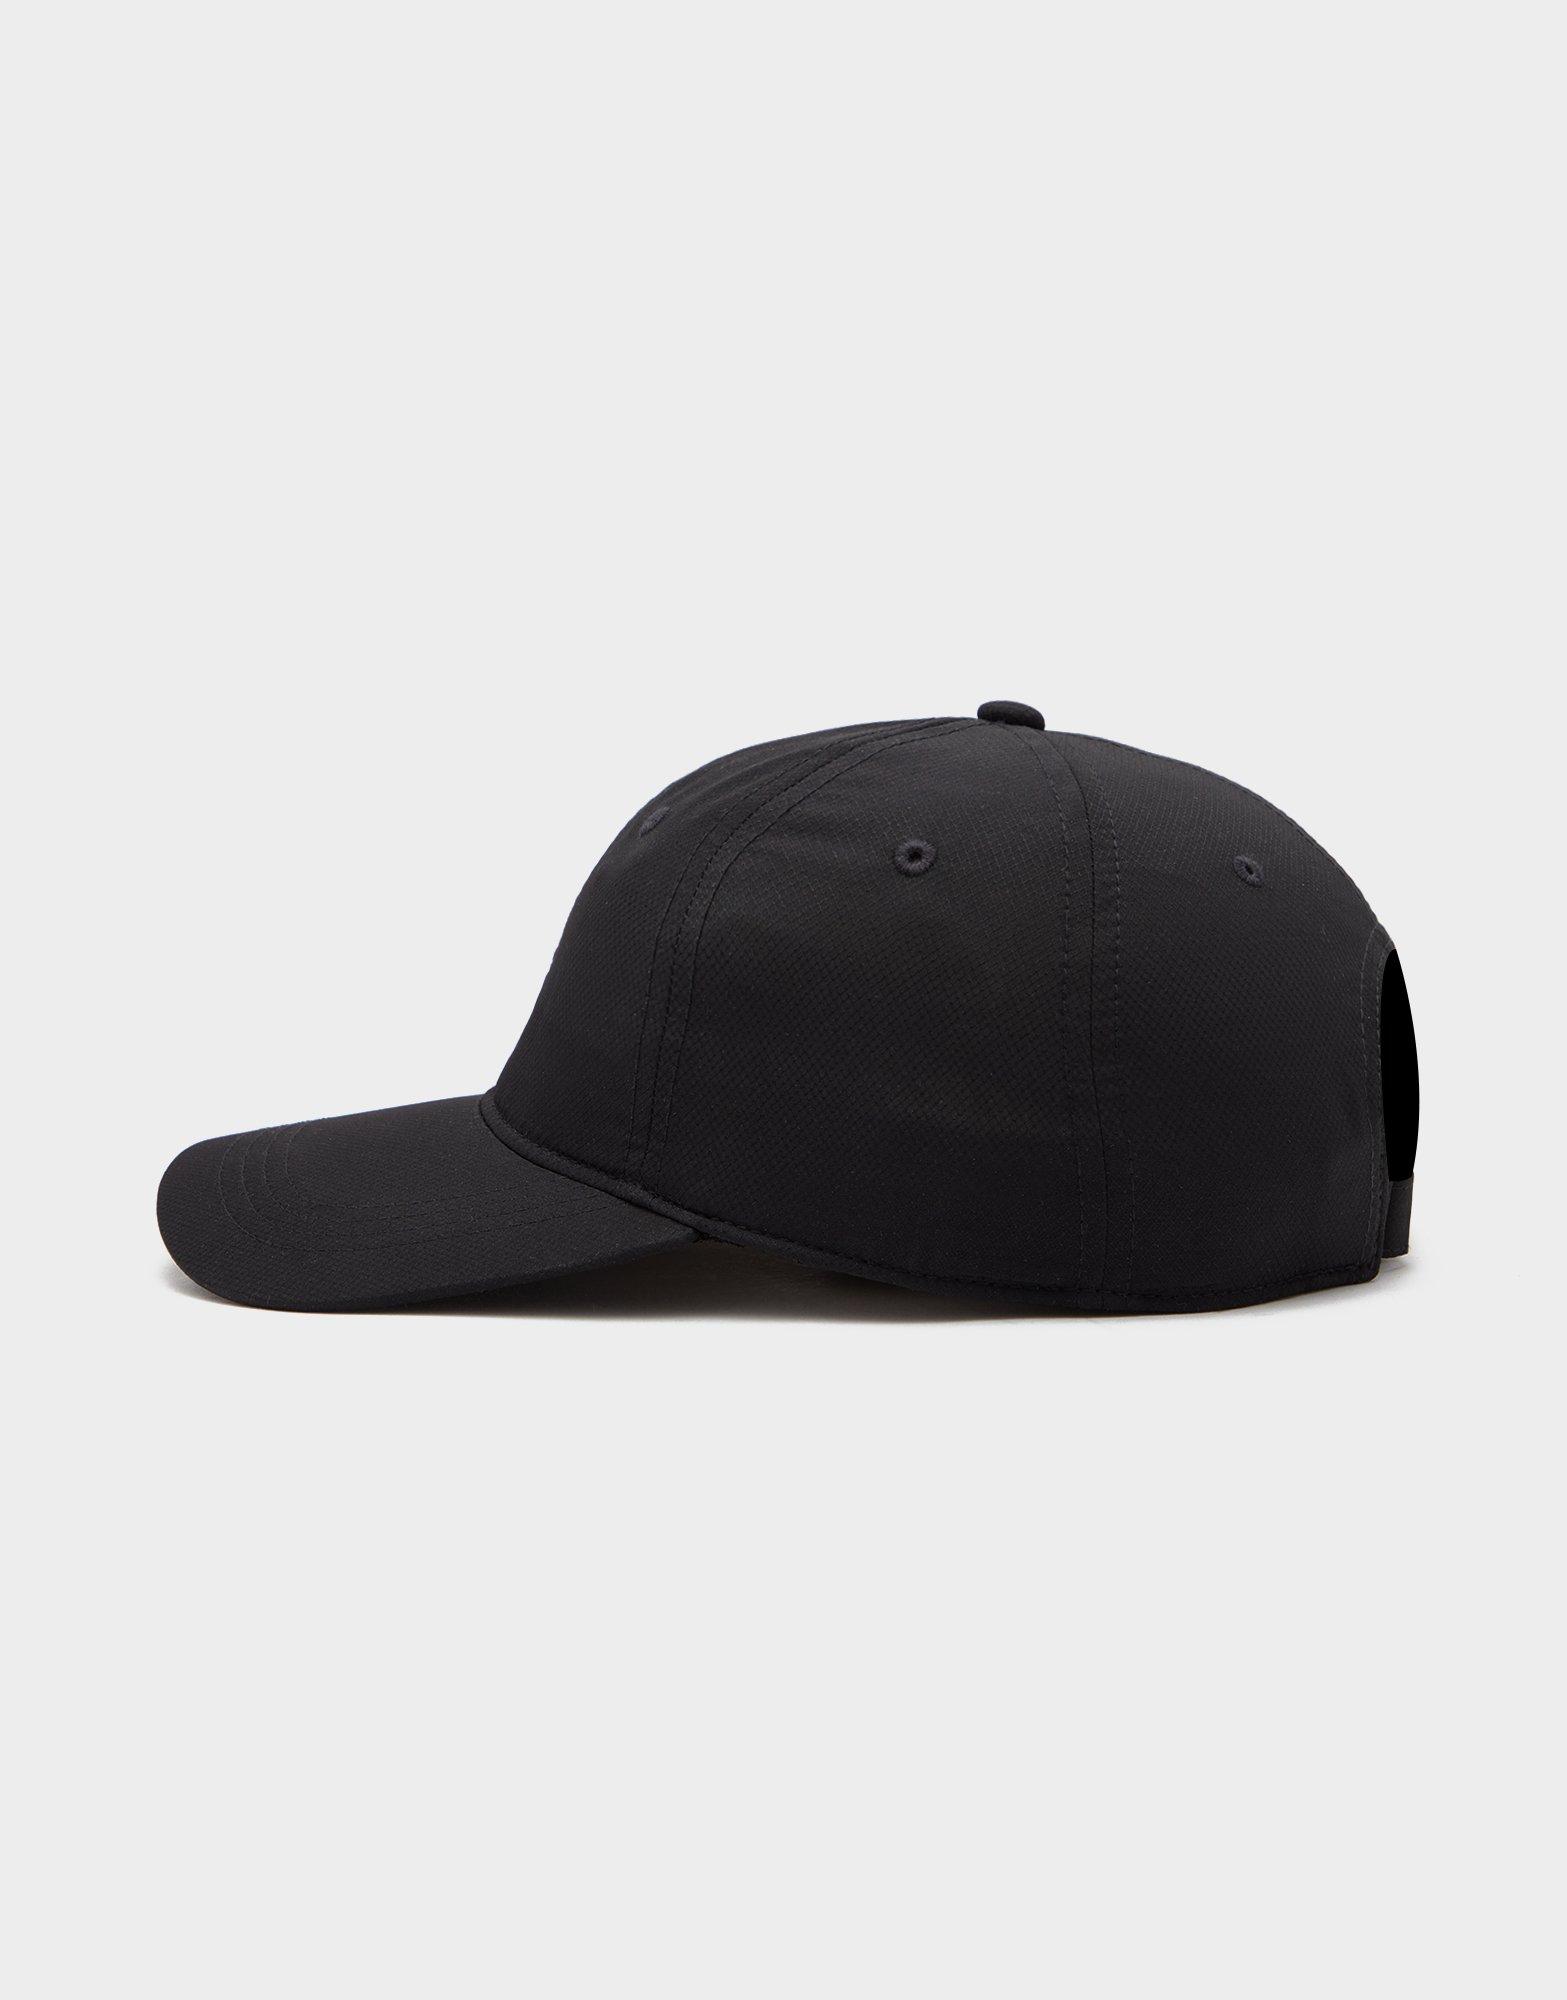 black lacoste hat